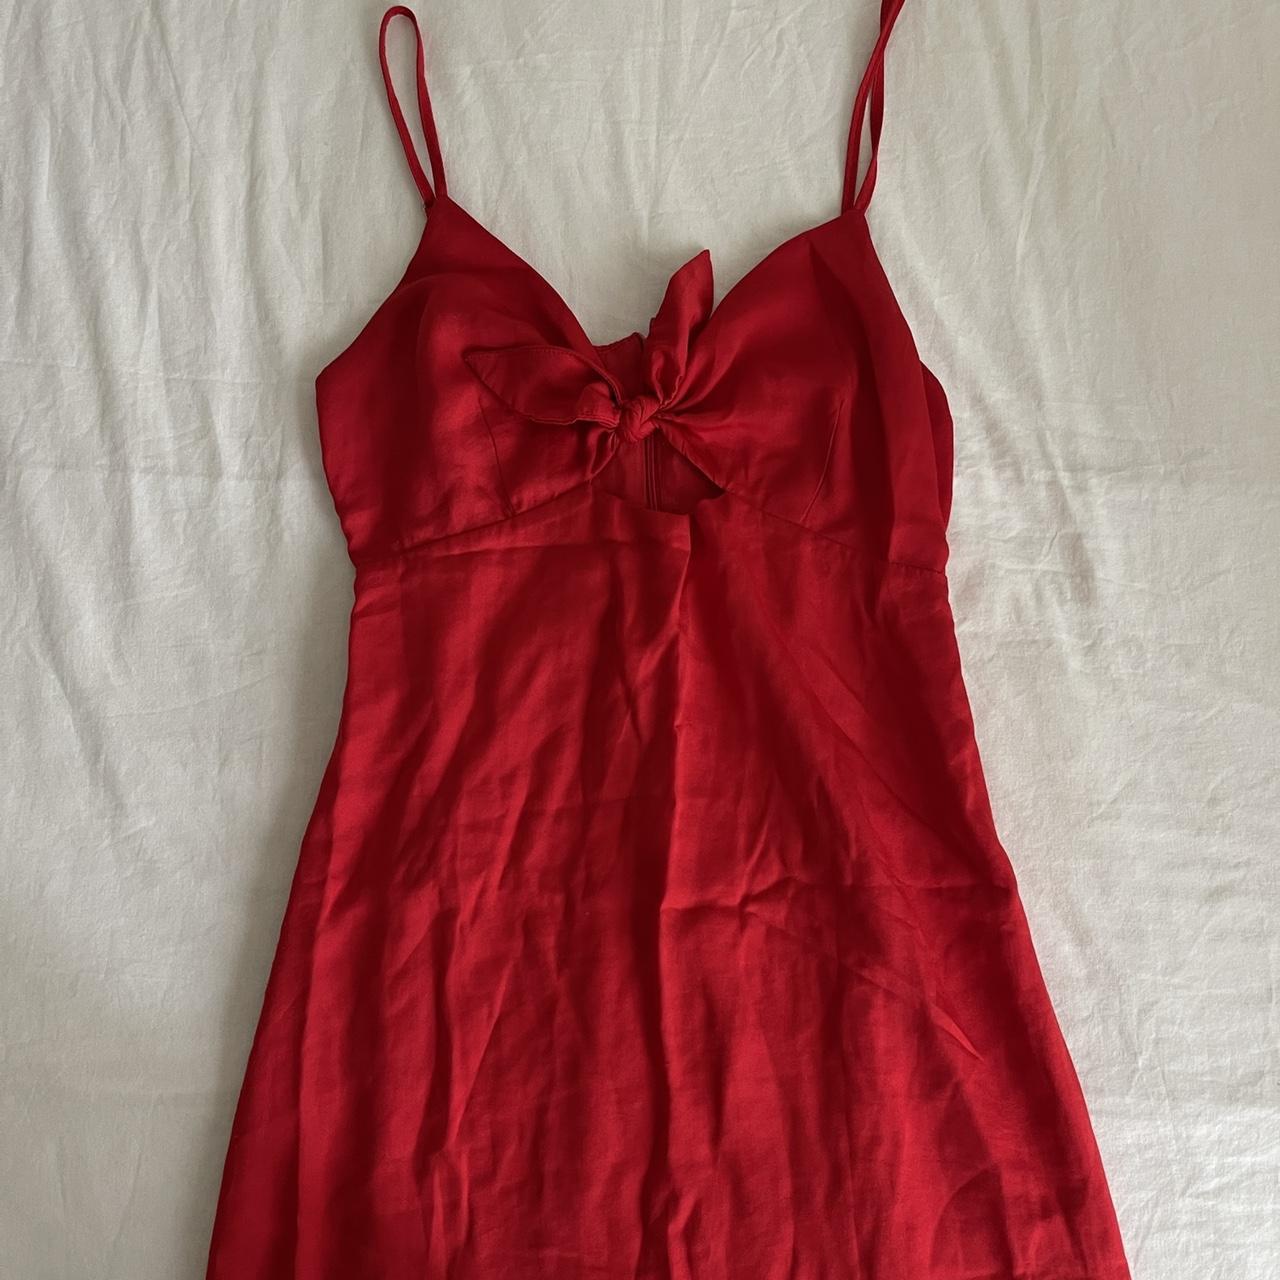 cute mini silk red dress ️ size: xs-s - Depop